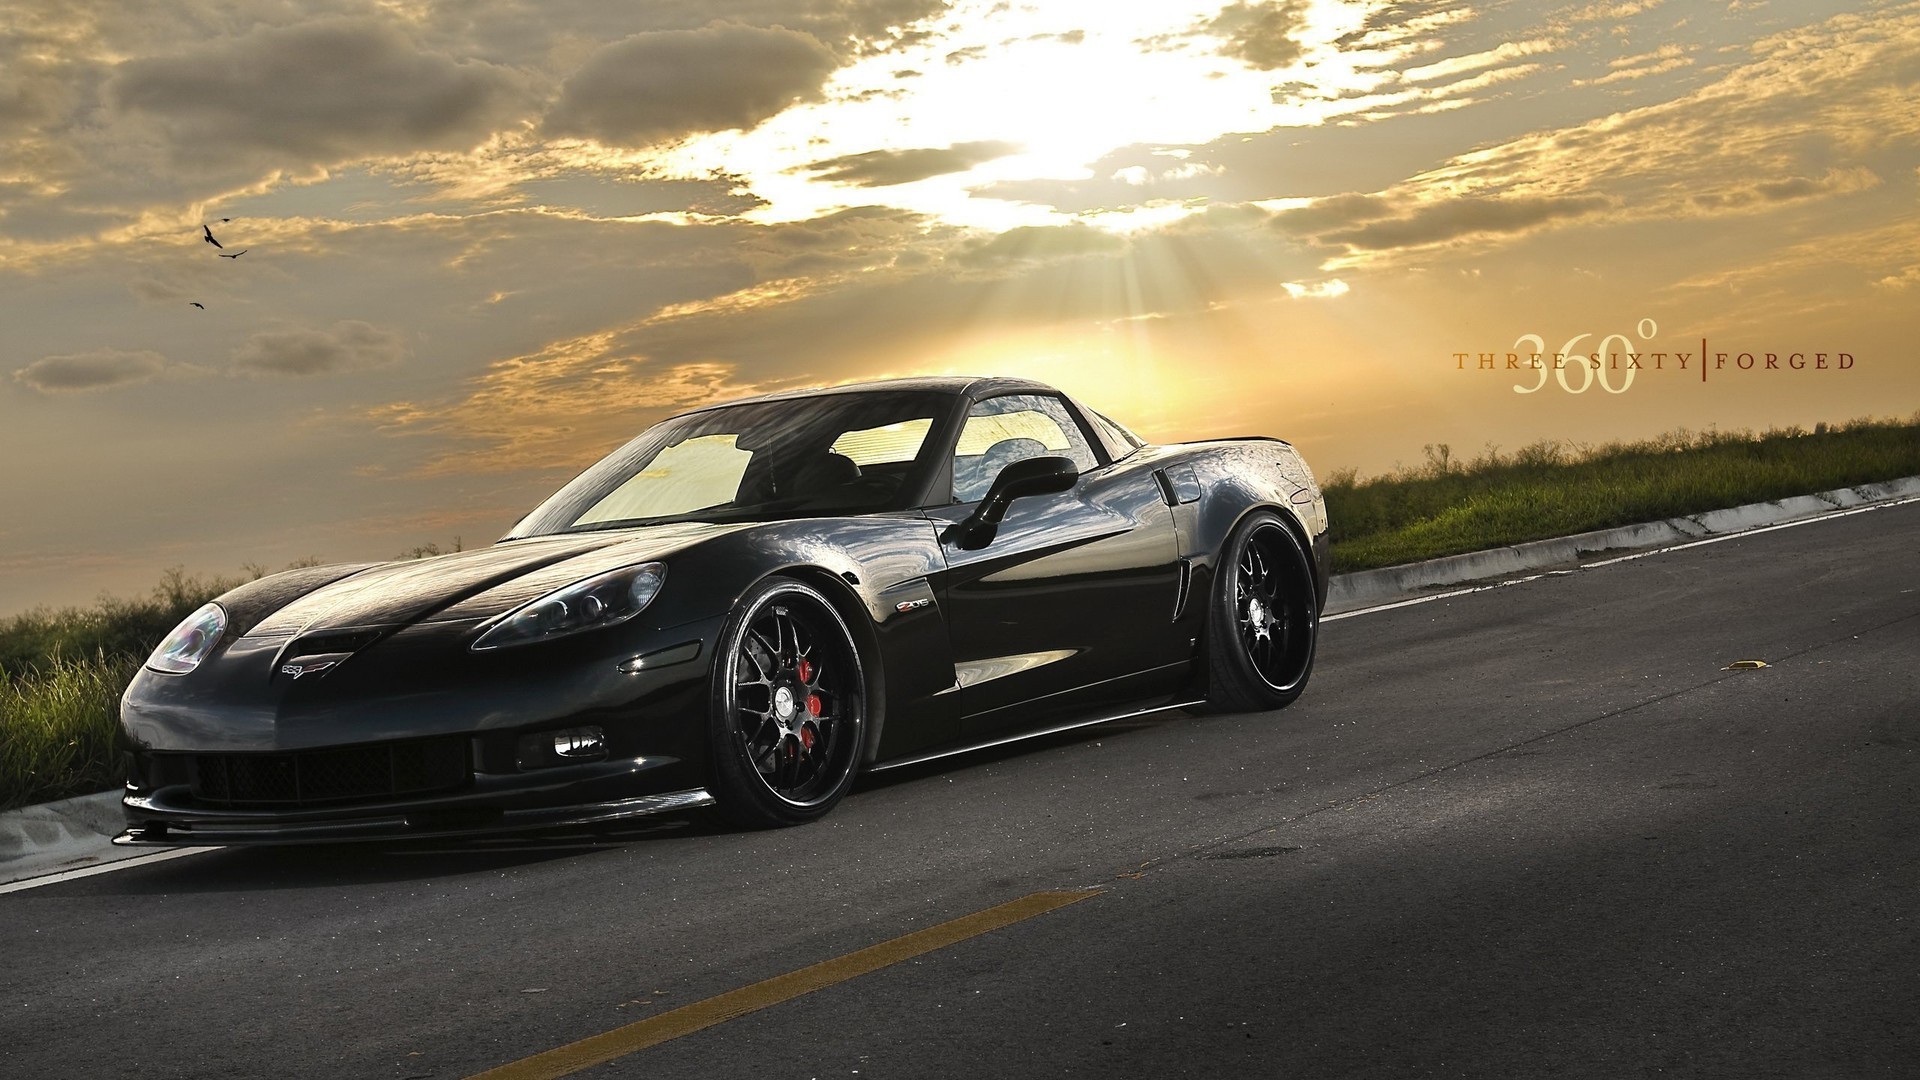 landscapes, cars, Chevrolet Corvette, black cars, front angle view - desktop wallpaper